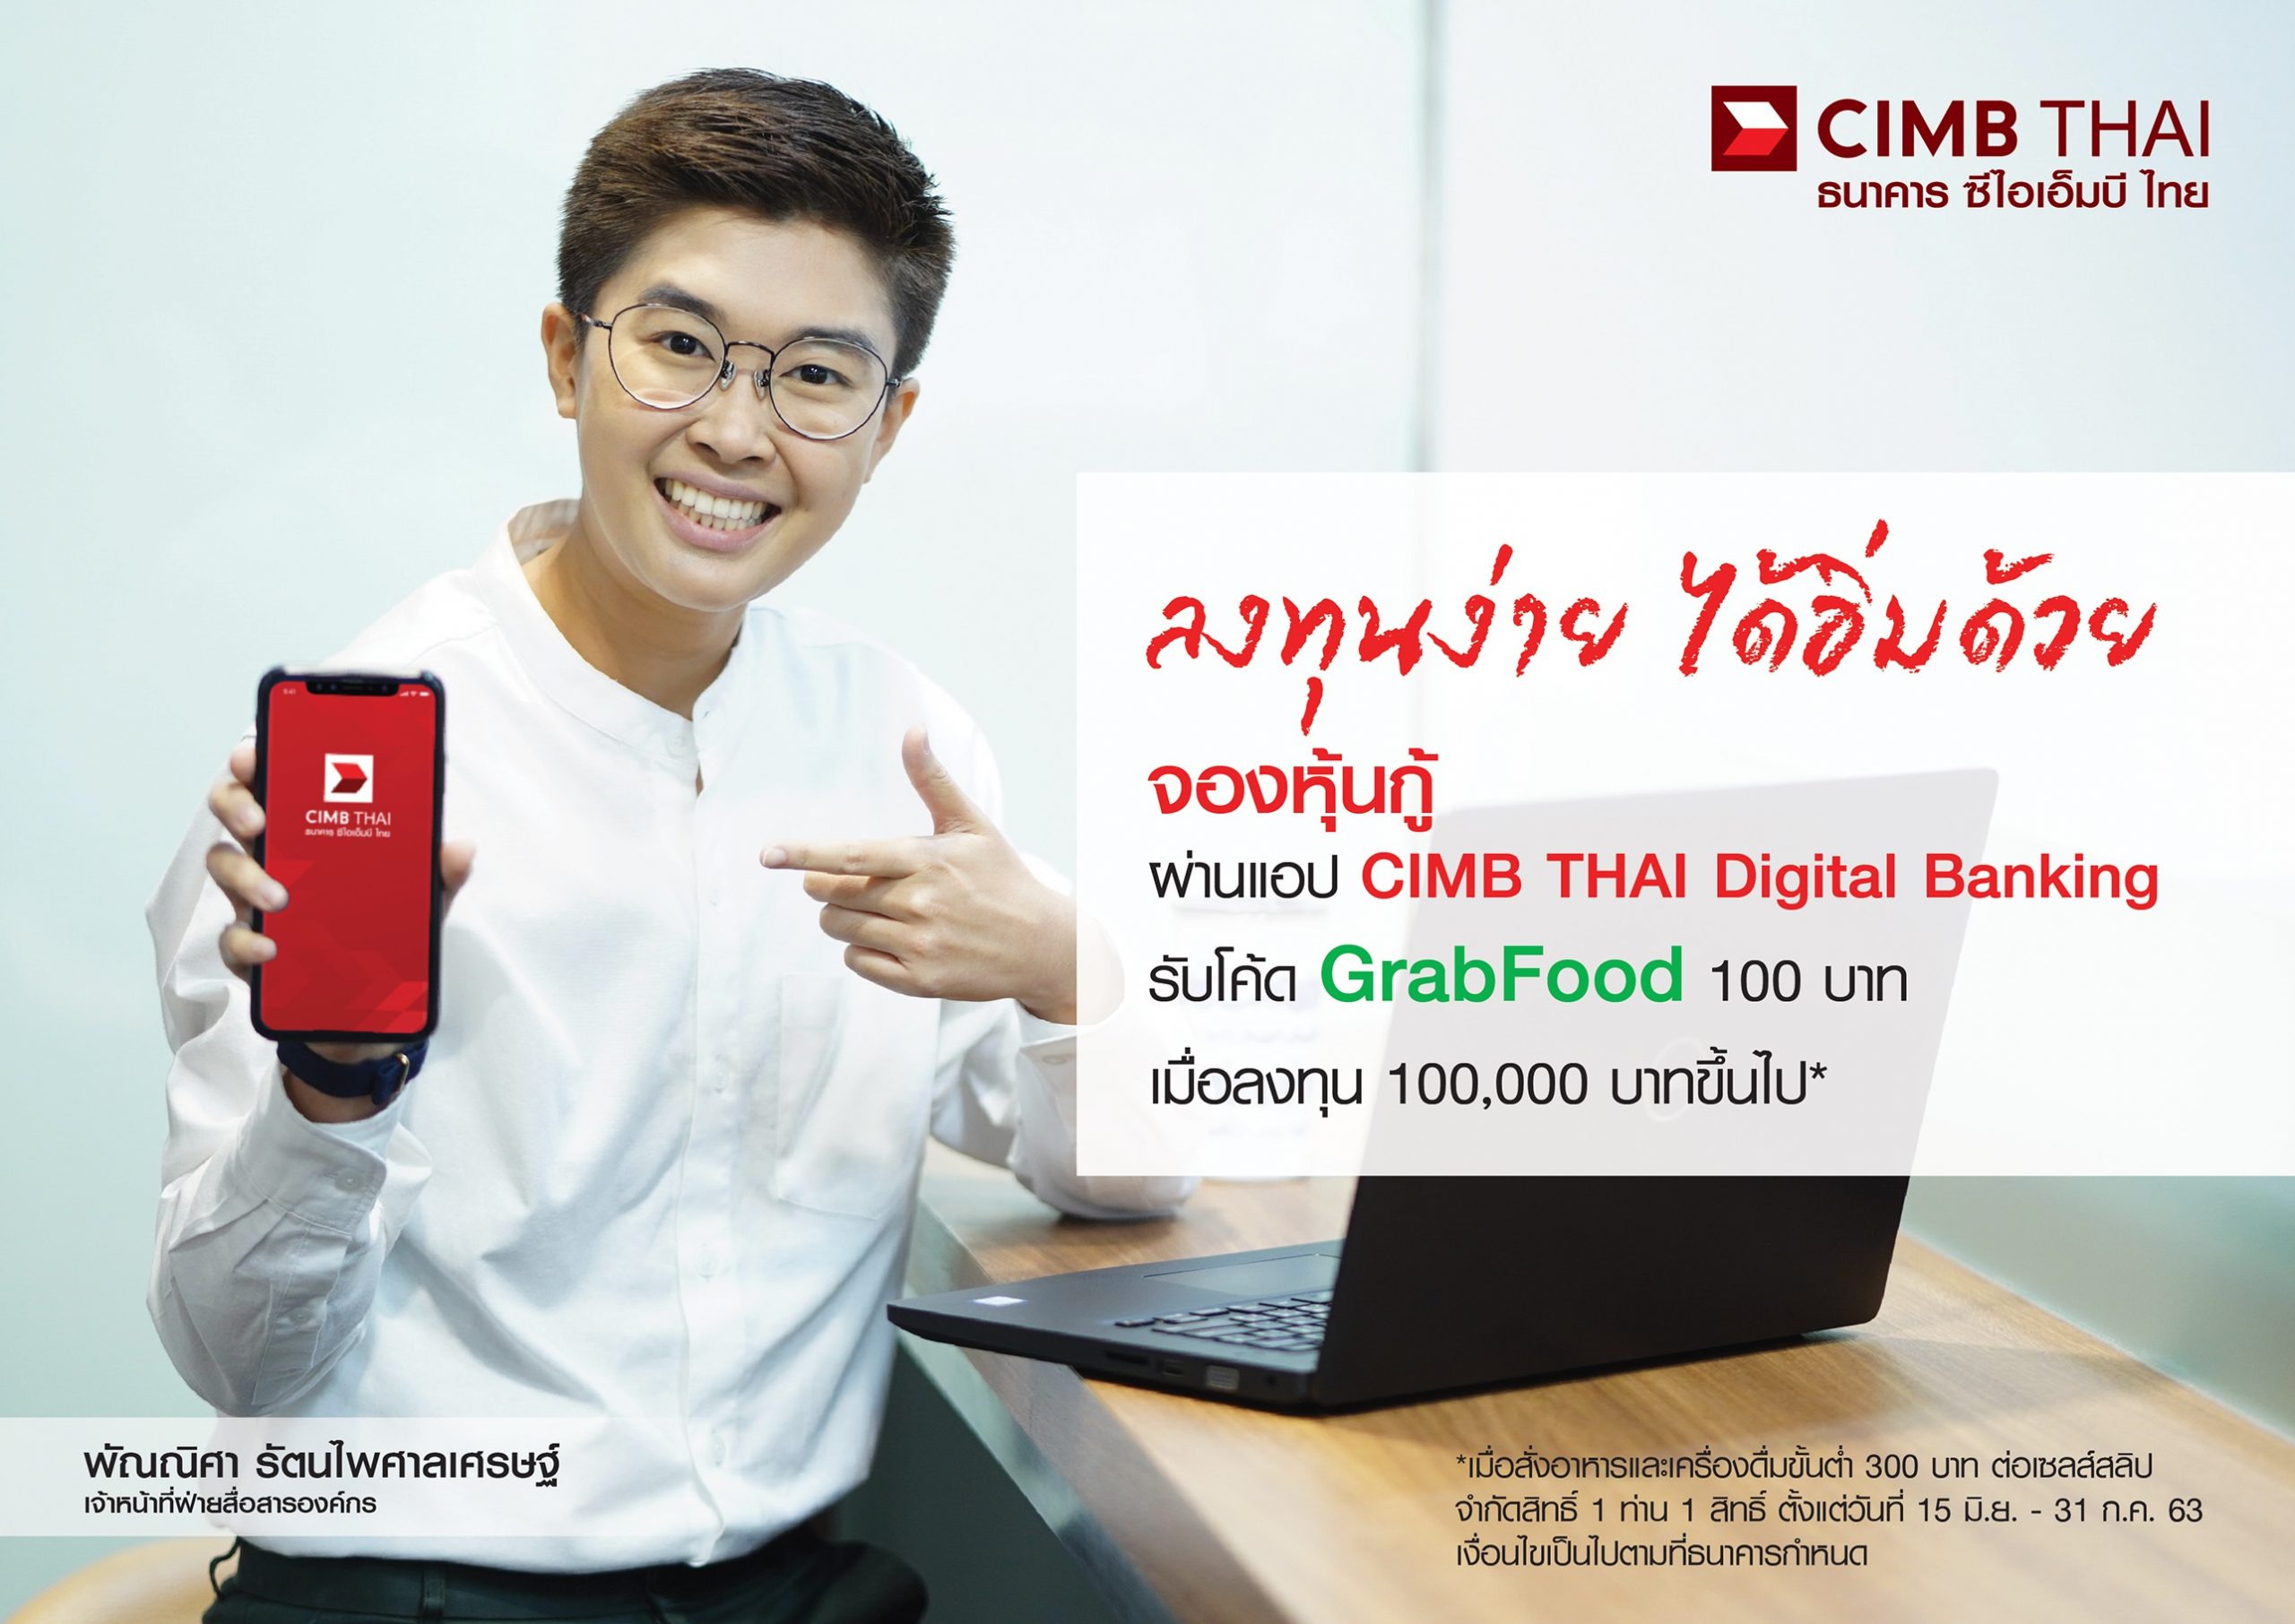 ธนาคาร ซีไอเอ็มบี ไทย มอบส่วนลด GrabFood เมื่อซื้อหุ้นกู้ ผ่านทางแอป CIMB THAI Digital Banking ครบ 100,000 บาท ตั้งแต่วันนี้ 31 ก.ค. 2563